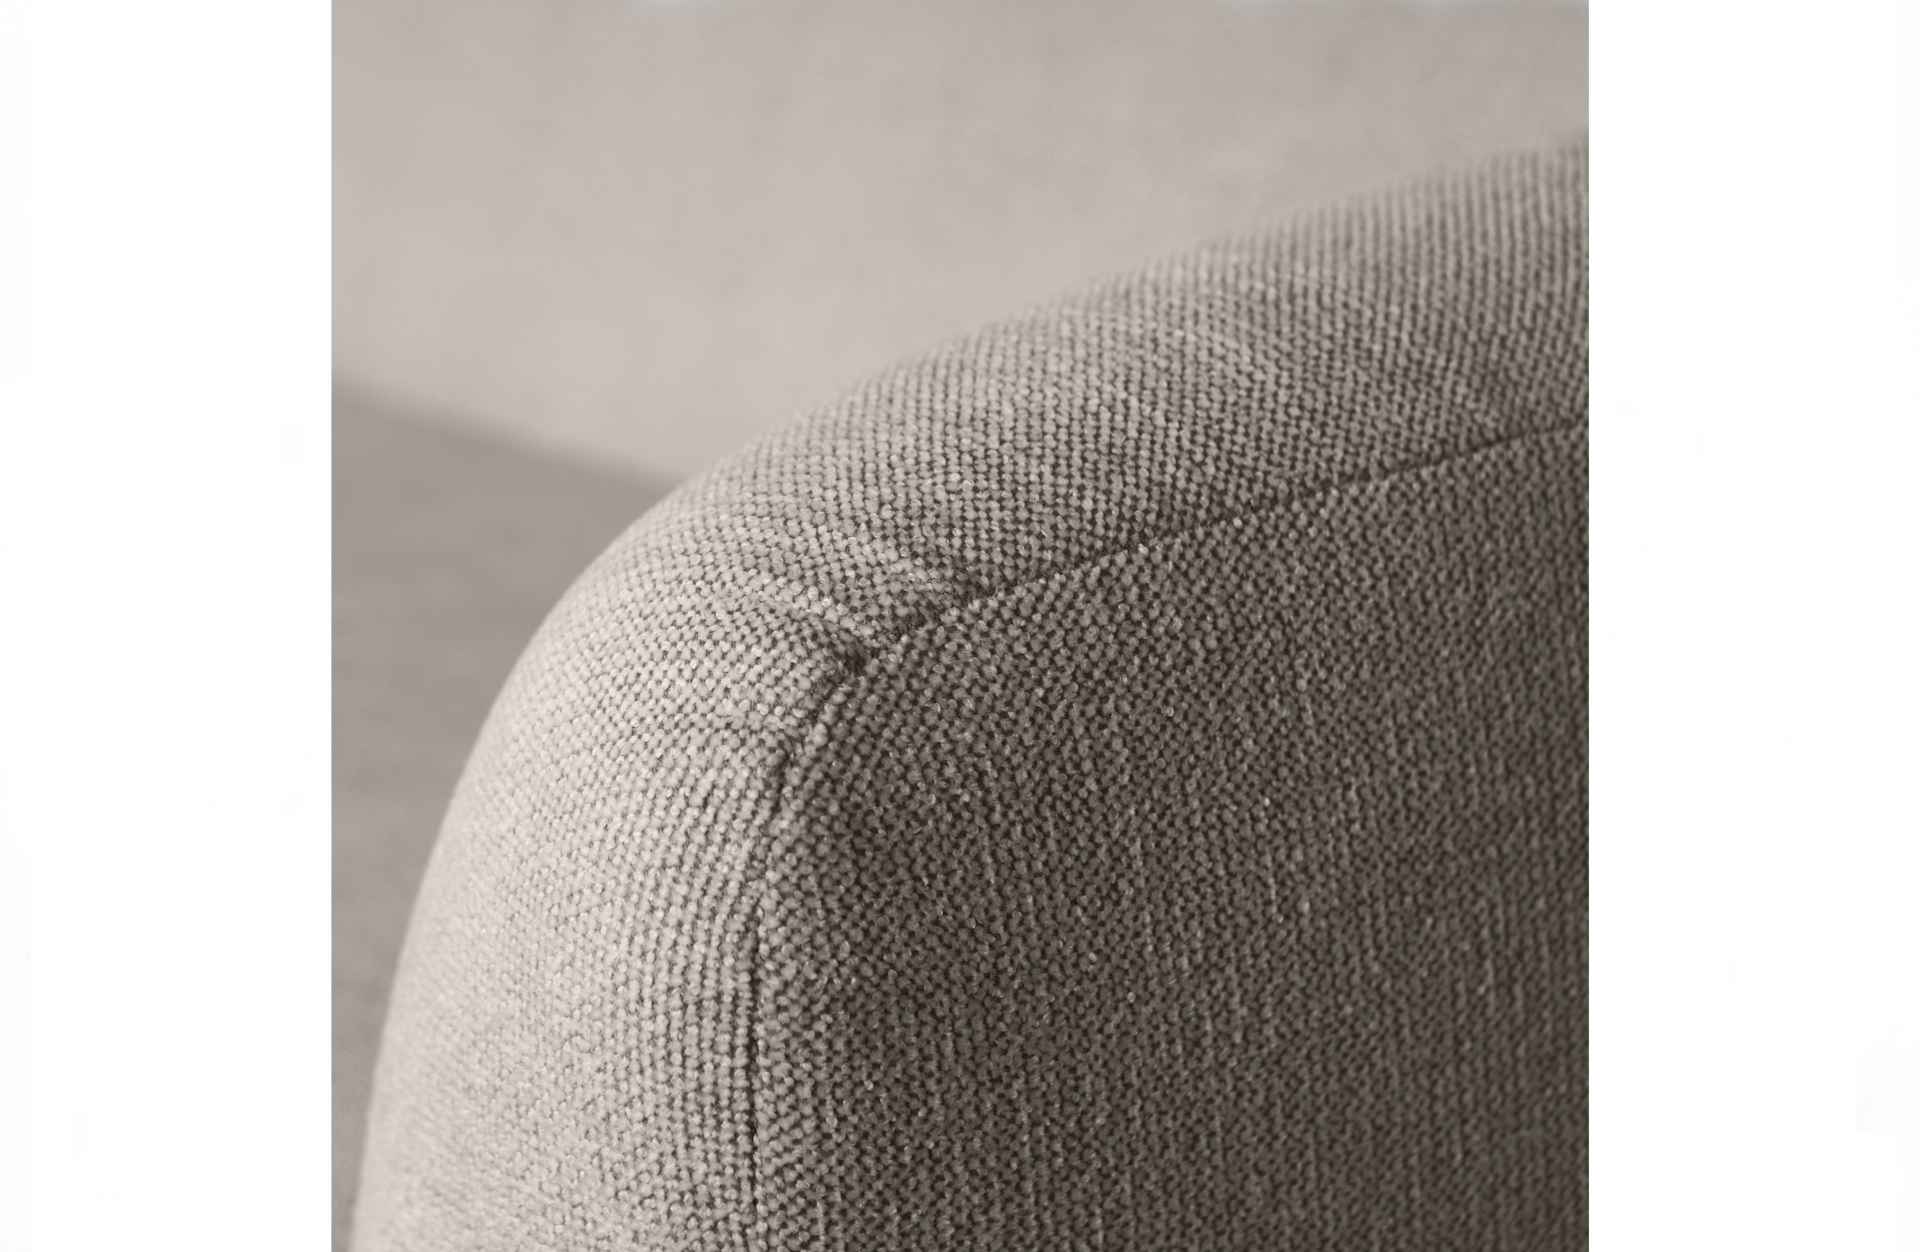 Das 3-Sitzer Sofa Sloping überzeugt mit seinem modernen Design. Gefertigt wurde es aus Kunststofffasern, welche einen einen grauen Farbton besitzen. Das Sofa hat eine Breite von 240 cm und eine Sitzhöhe von 43 cm.